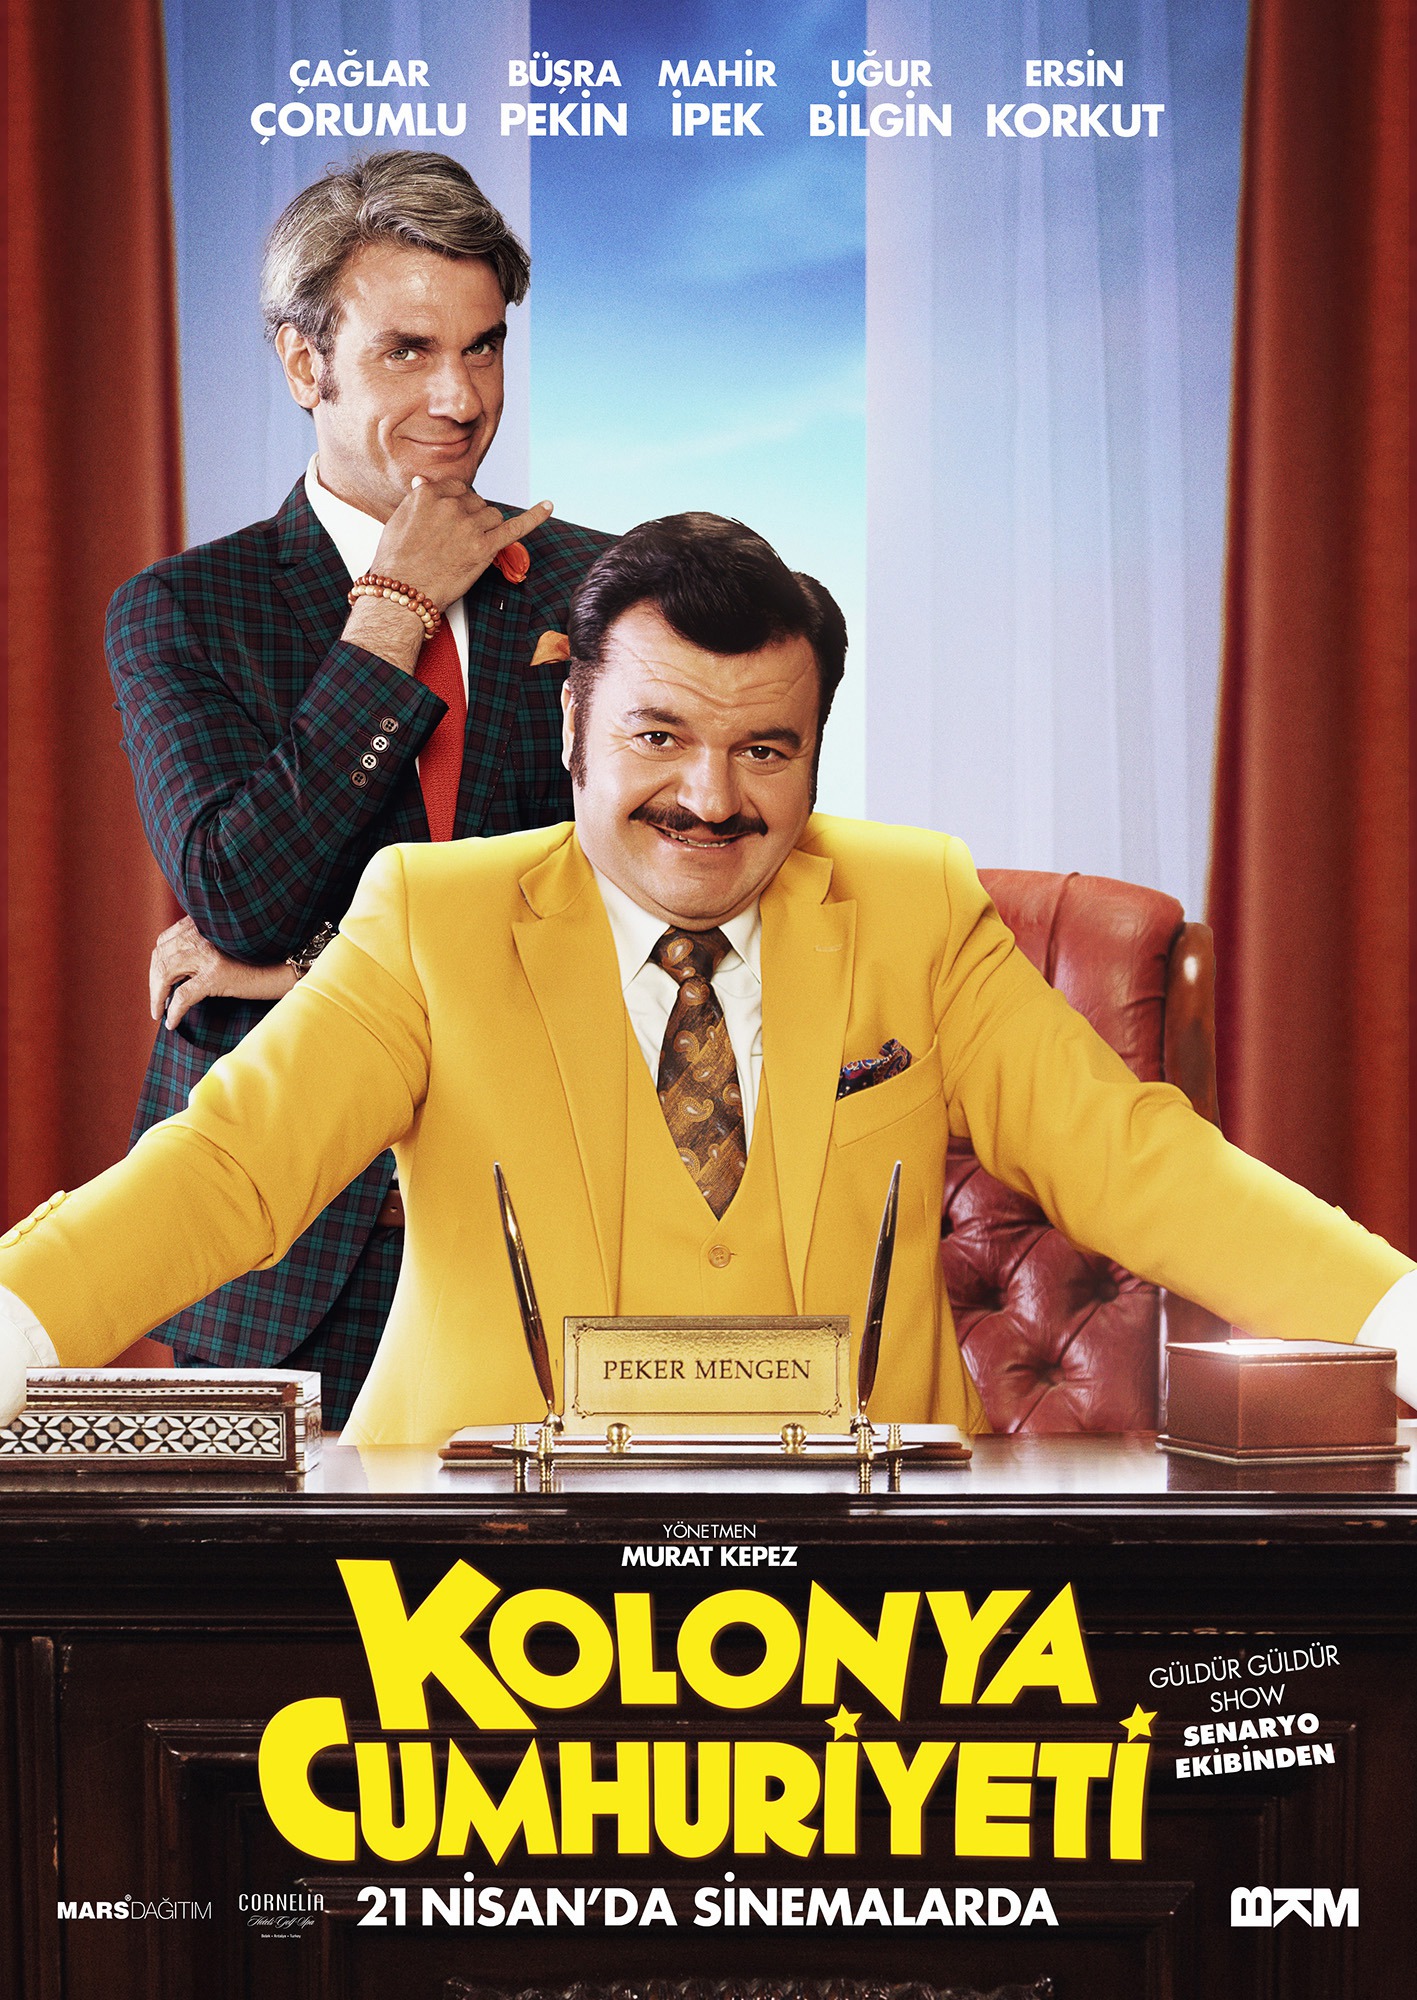 Mega Sized Movie Poster Image for Kolonya Cumhuriyeti (#5 of 7)